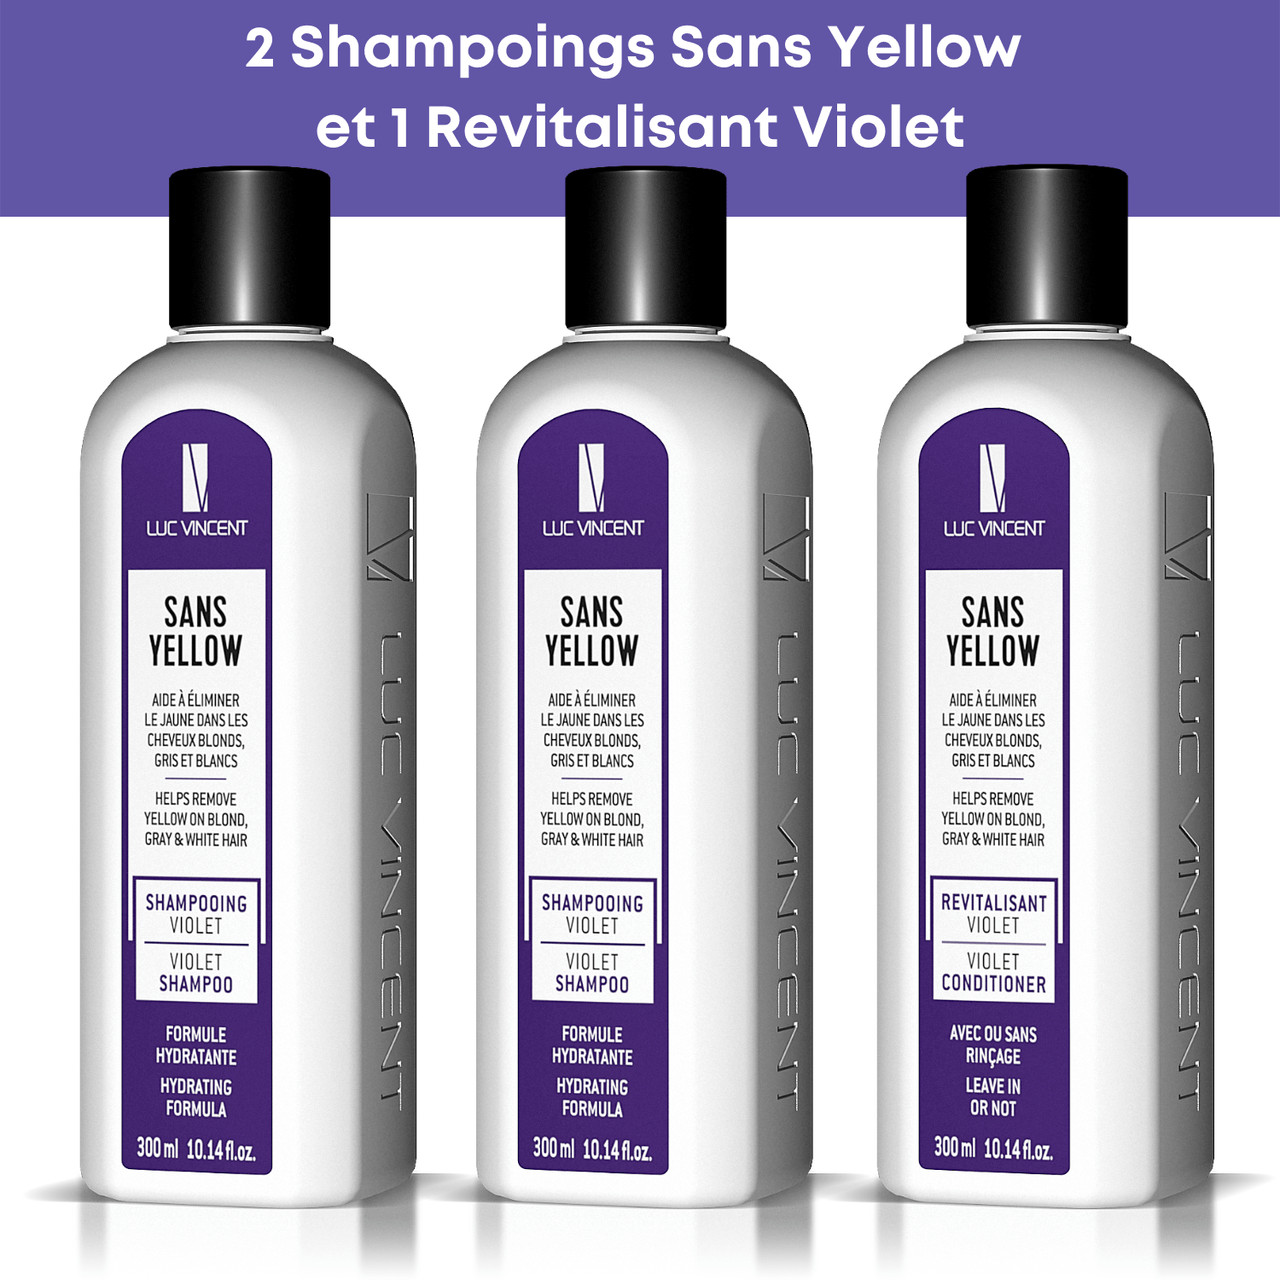 2 shampooings Sans Yellow et 1 revitalisant violet - Luc Vincent